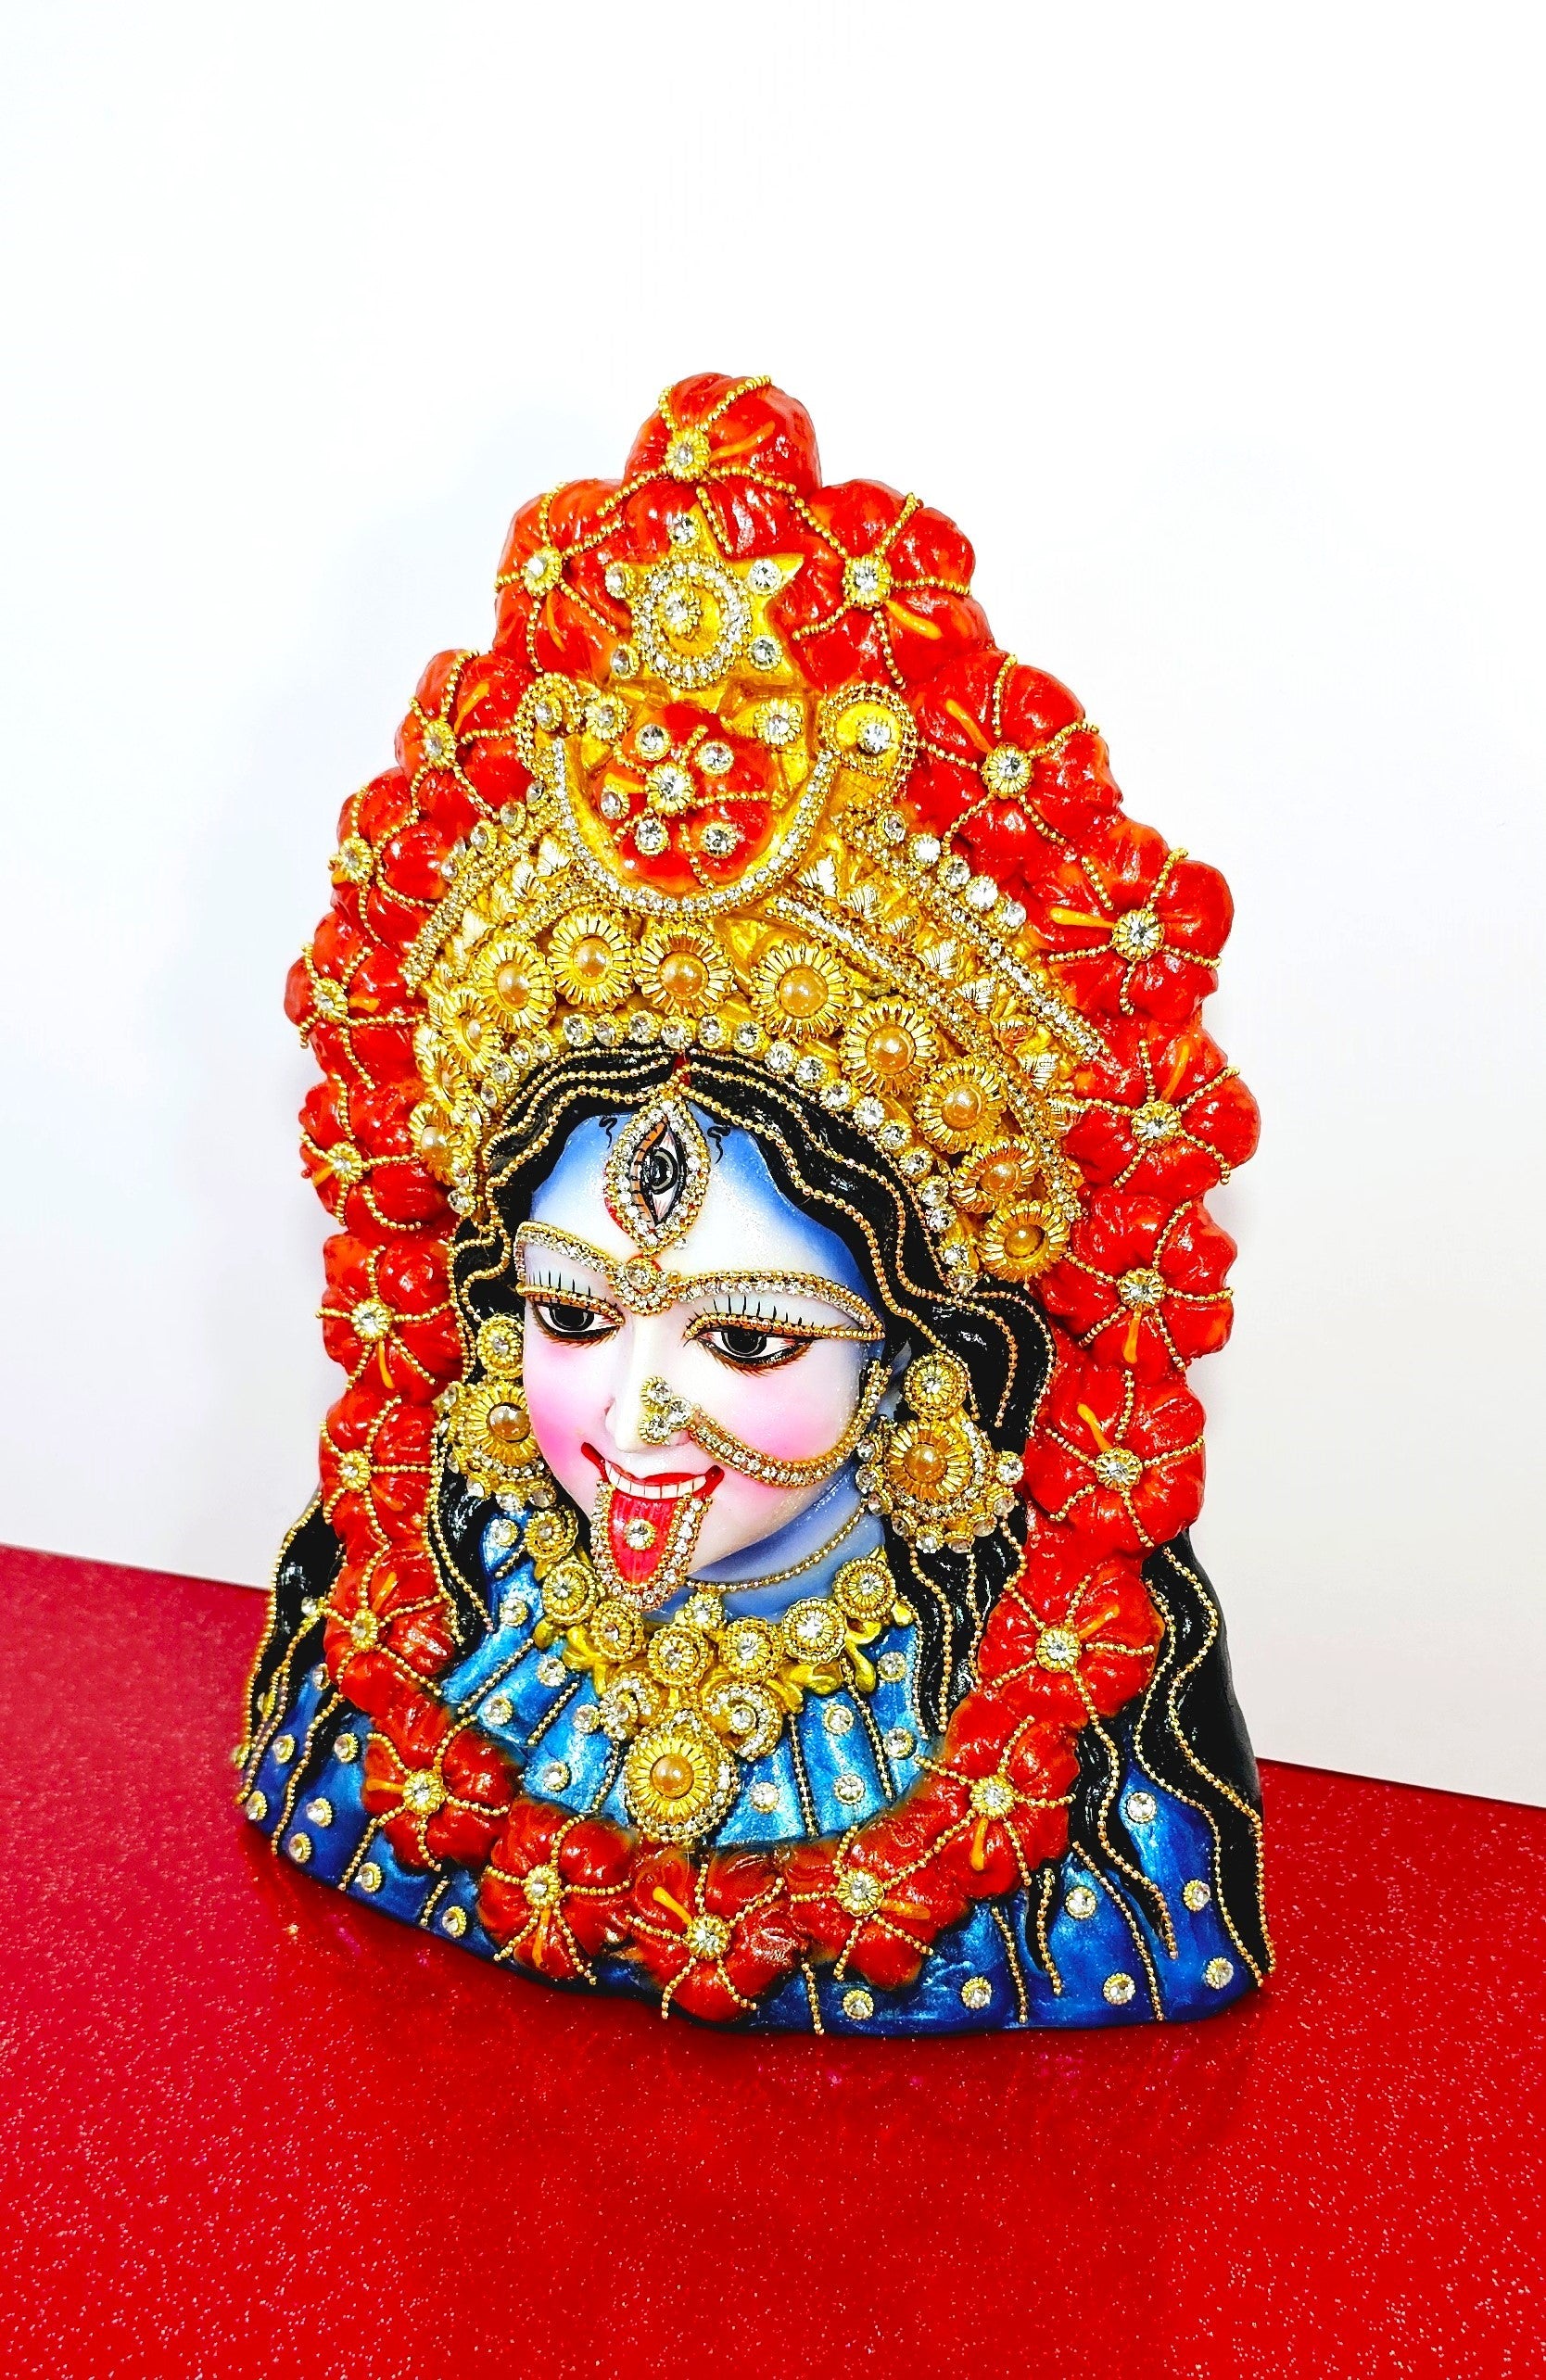 Kali Tara Maa dace statue